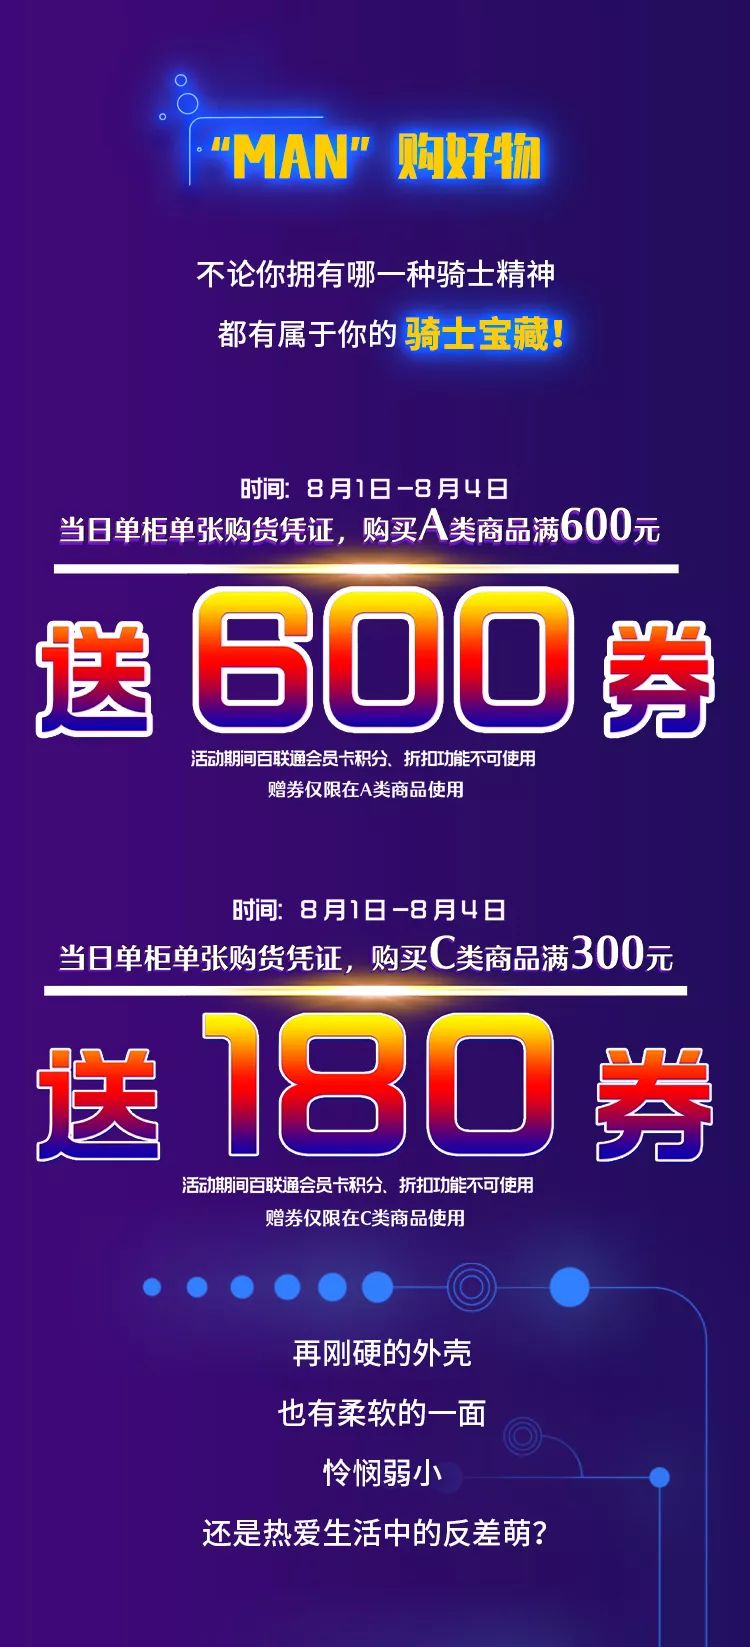 上海第一八佰伴83男人节 A类商品满600送600券